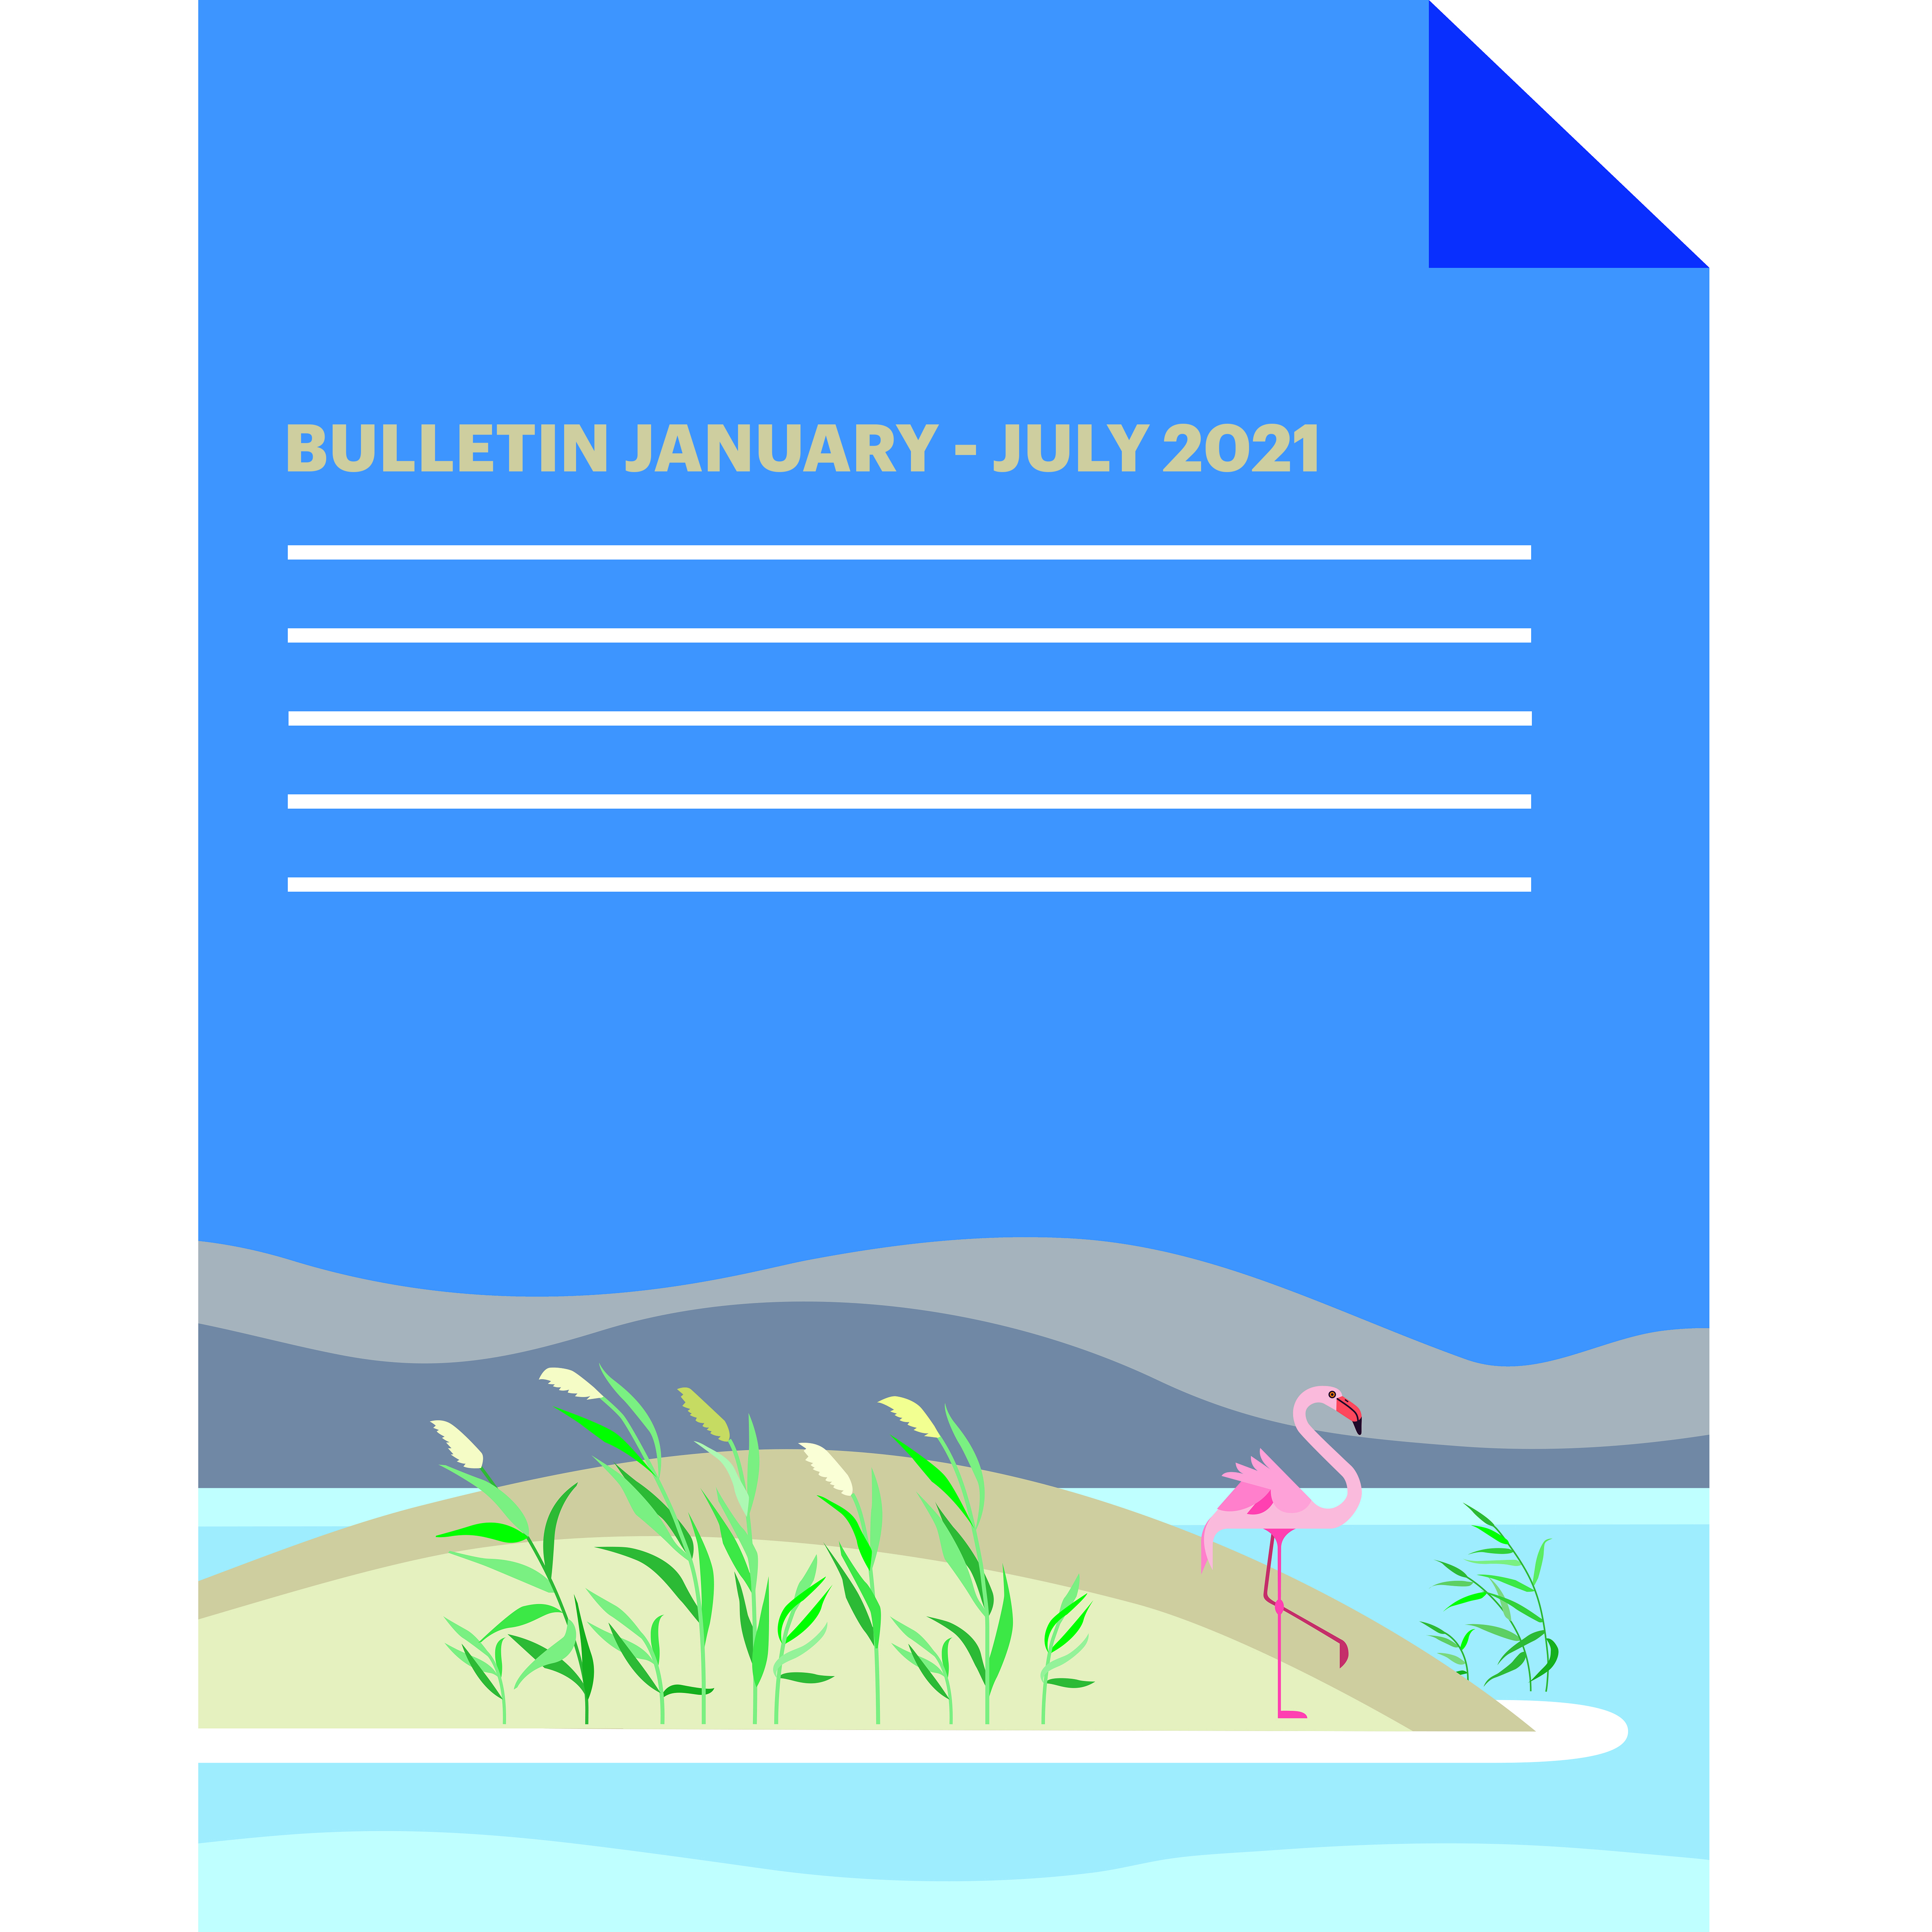 Bulletin January - July 2021